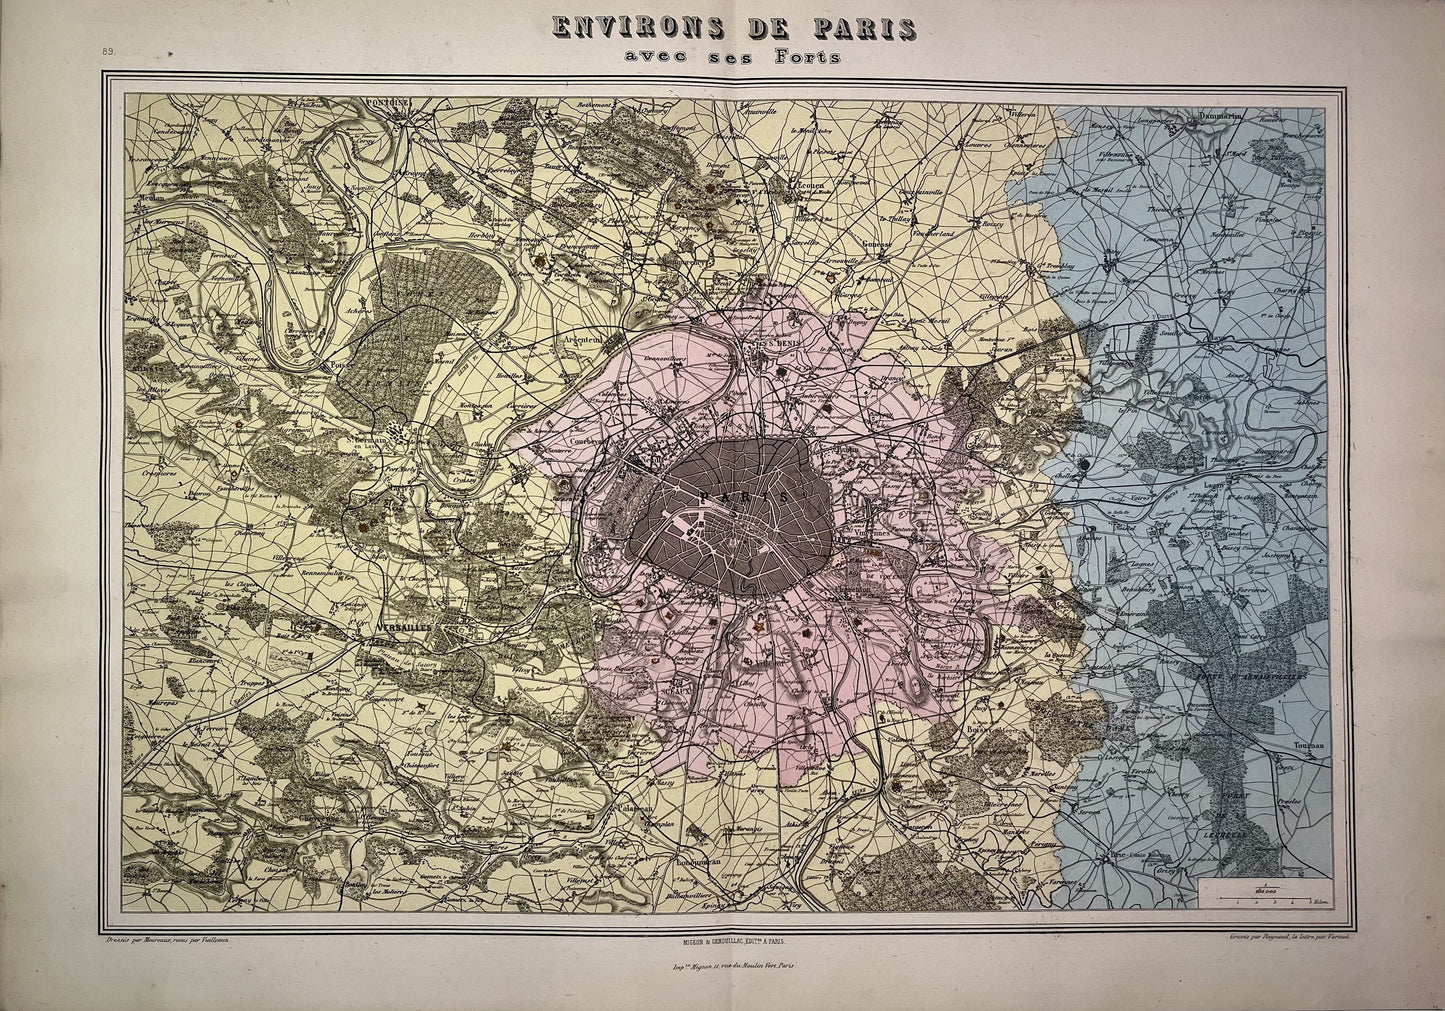 Carte ancienne des environs de Paris et ses forts par Migeon